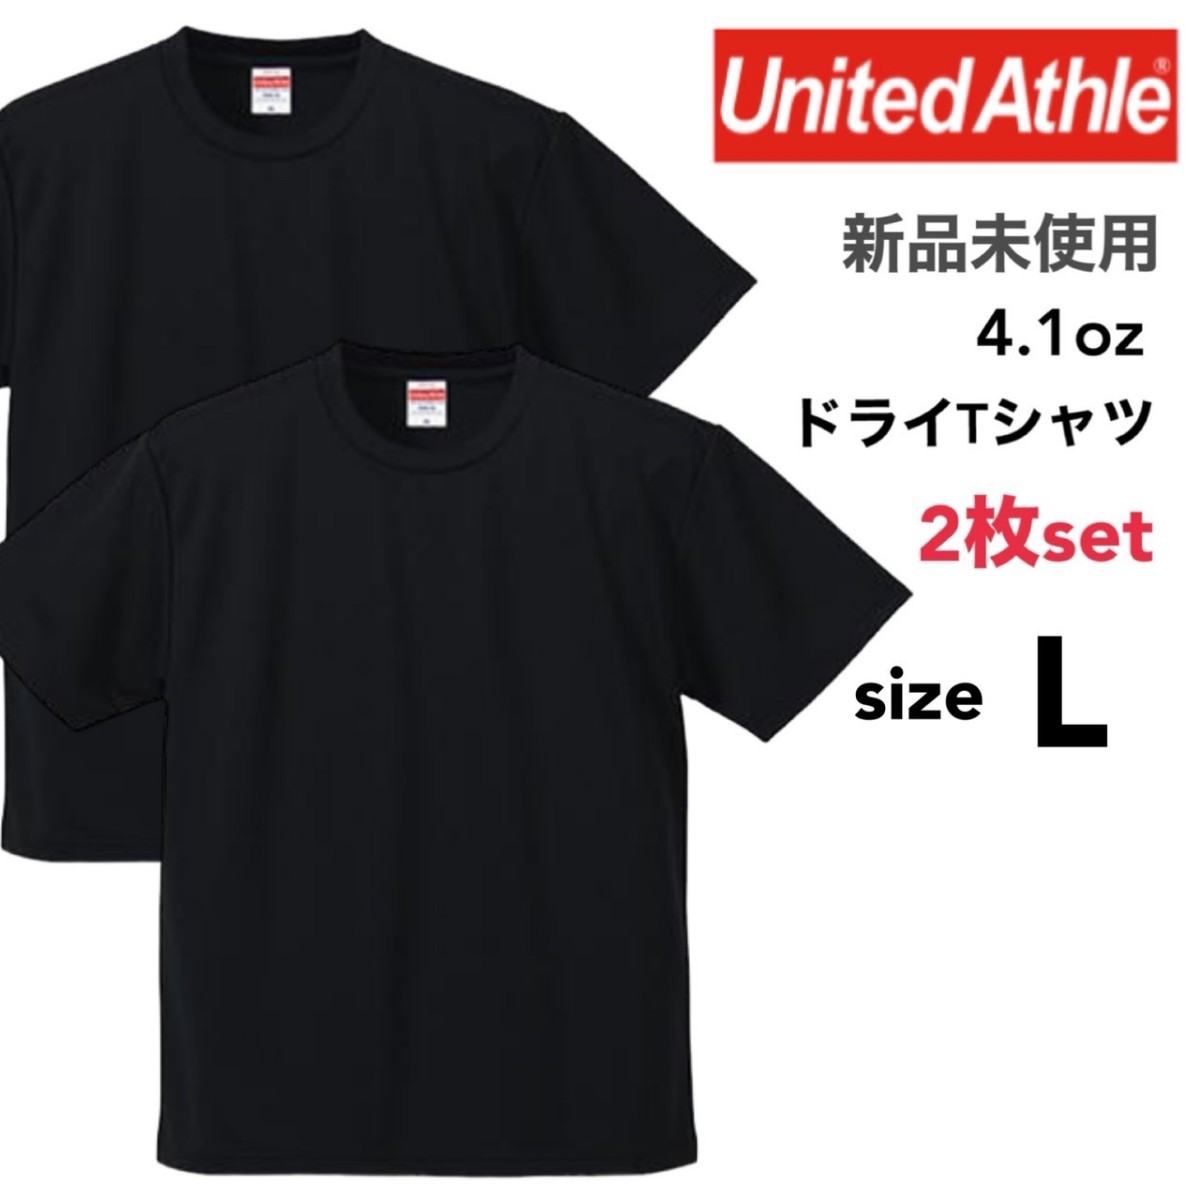 新品未使用 ユナイテッドアスレ ドライ アスレチック Tシャツ 黒 ブラック 2枚セット Lサイズ United Athle 590001 スポーツ